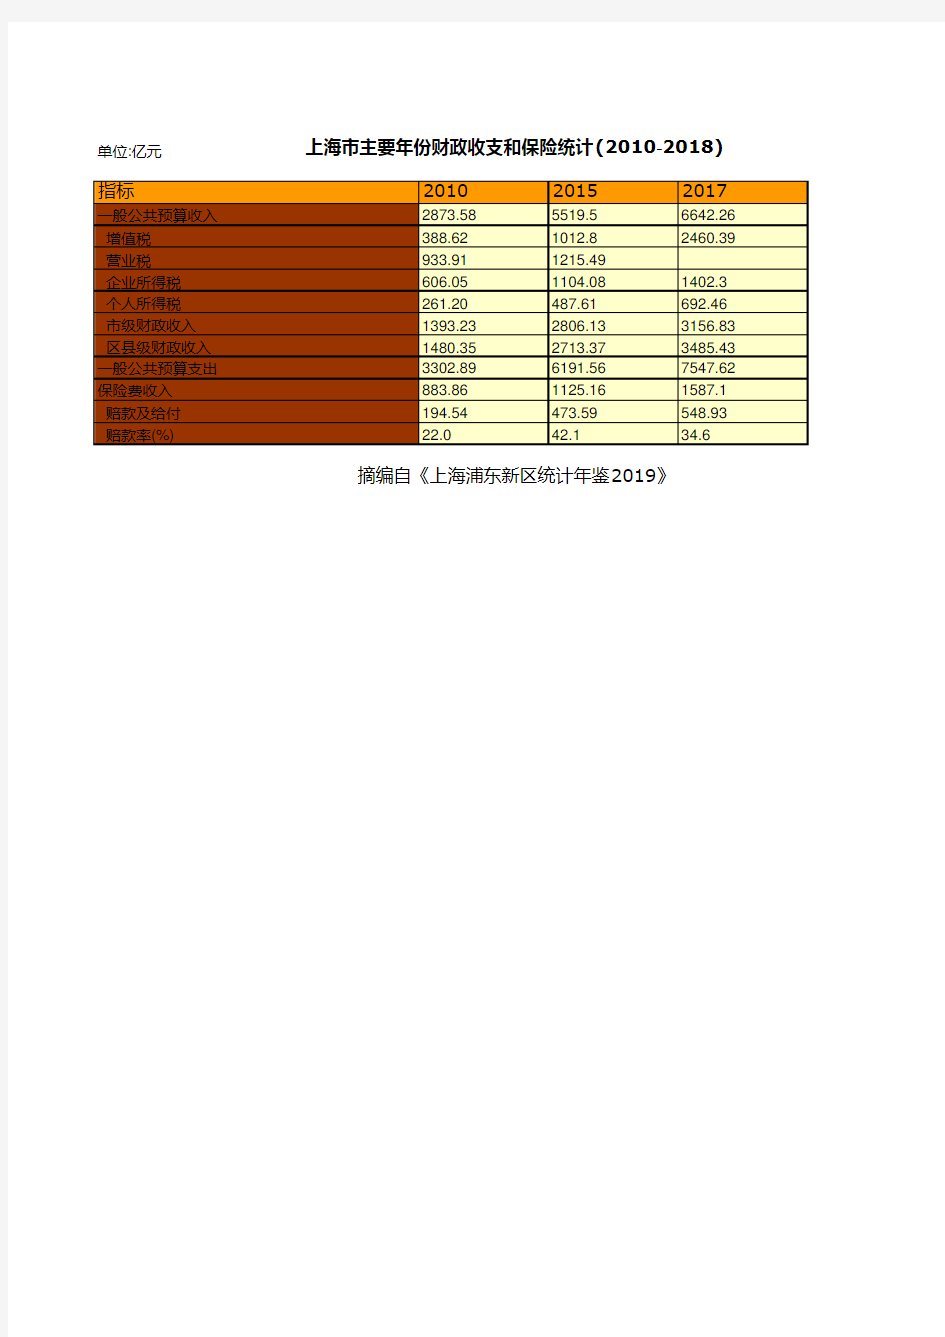 上海市统计年鉴社会经济发展指标数据：主要年份财政收支和保险统计(2010-2018)